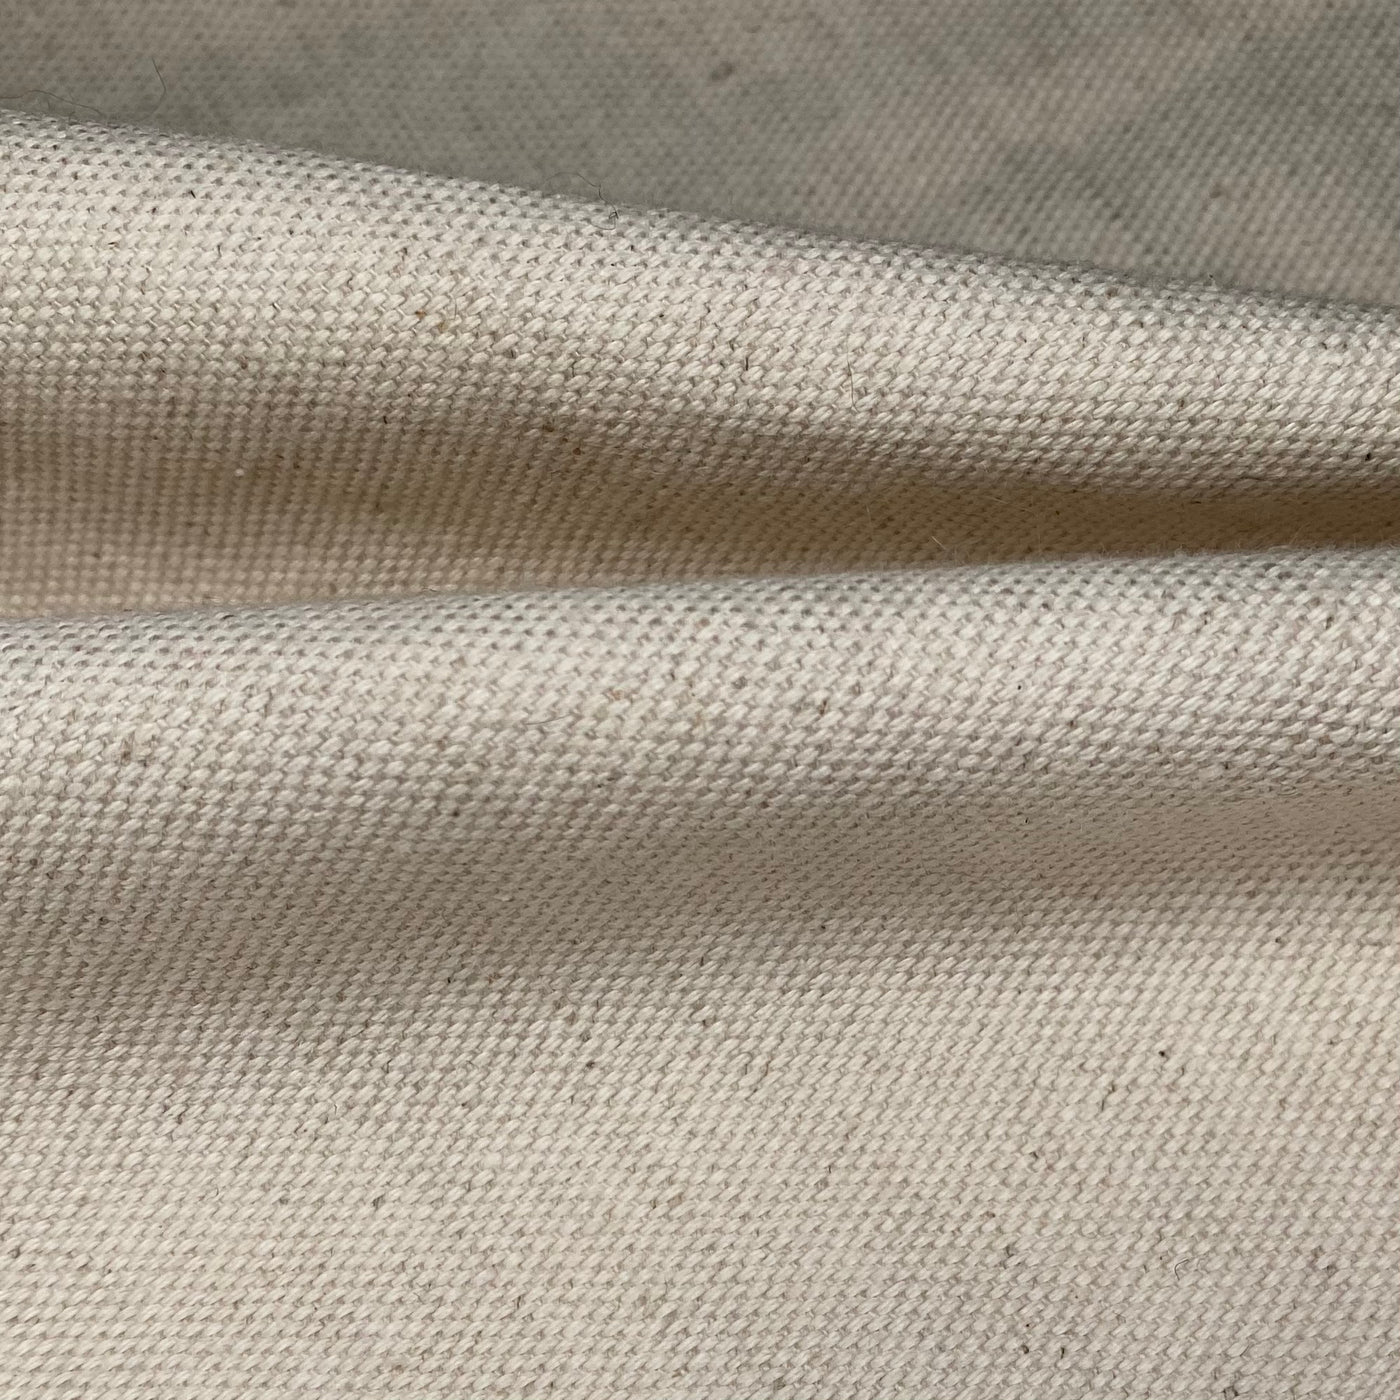 Cotton Duck Canvas - 12oz - Beige · King Textiles